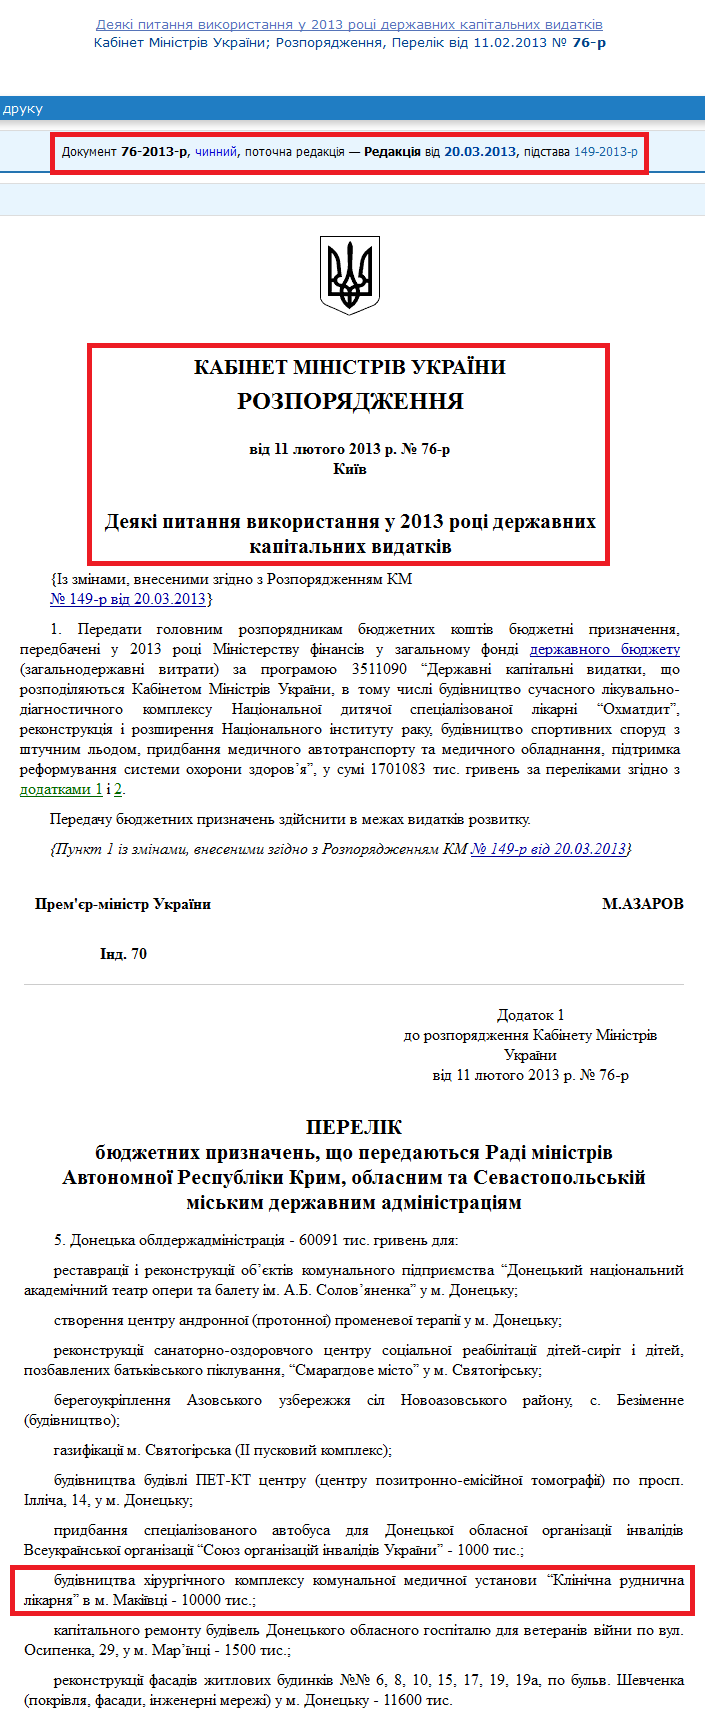 http://zakon4.rada.gov.ua/laws/show/76-2013-%D1%80